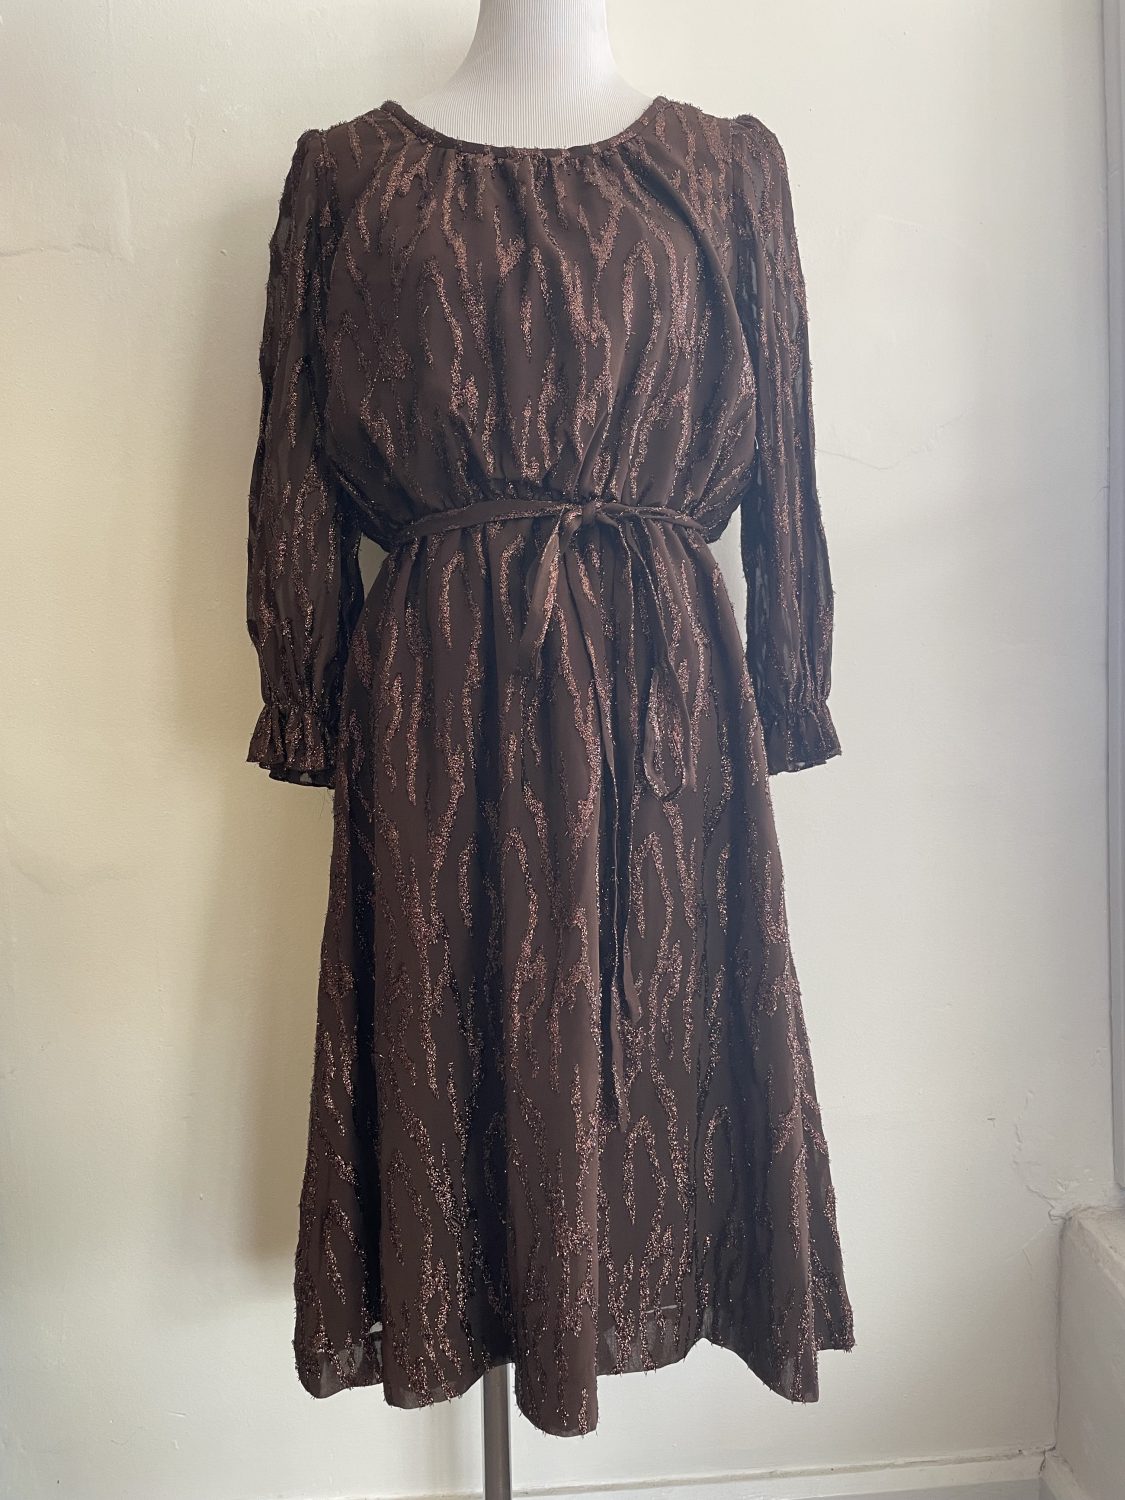 AUTHENTIC 80's BROWN LUREX DRESS WITH TIE BELT | Chaos Bazaar Vintage